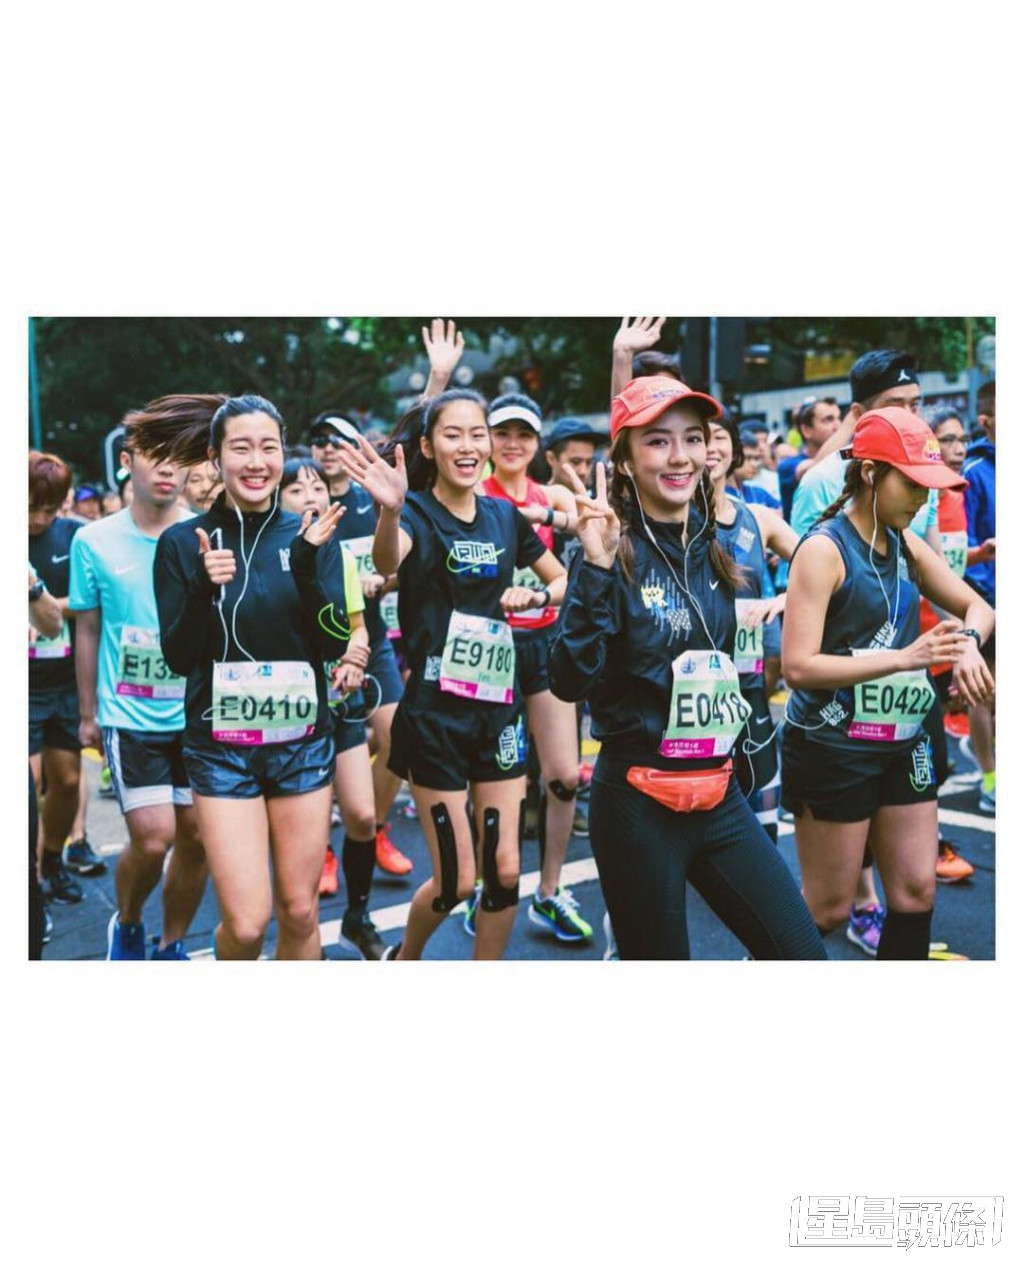 陳星妤2019年曾與林莉莉、李靖筠、杜穎珊、車泳希、王家欣及楊樂欣組成「GenZ」女子跑步團，參加香港馬拉松半程賽事。